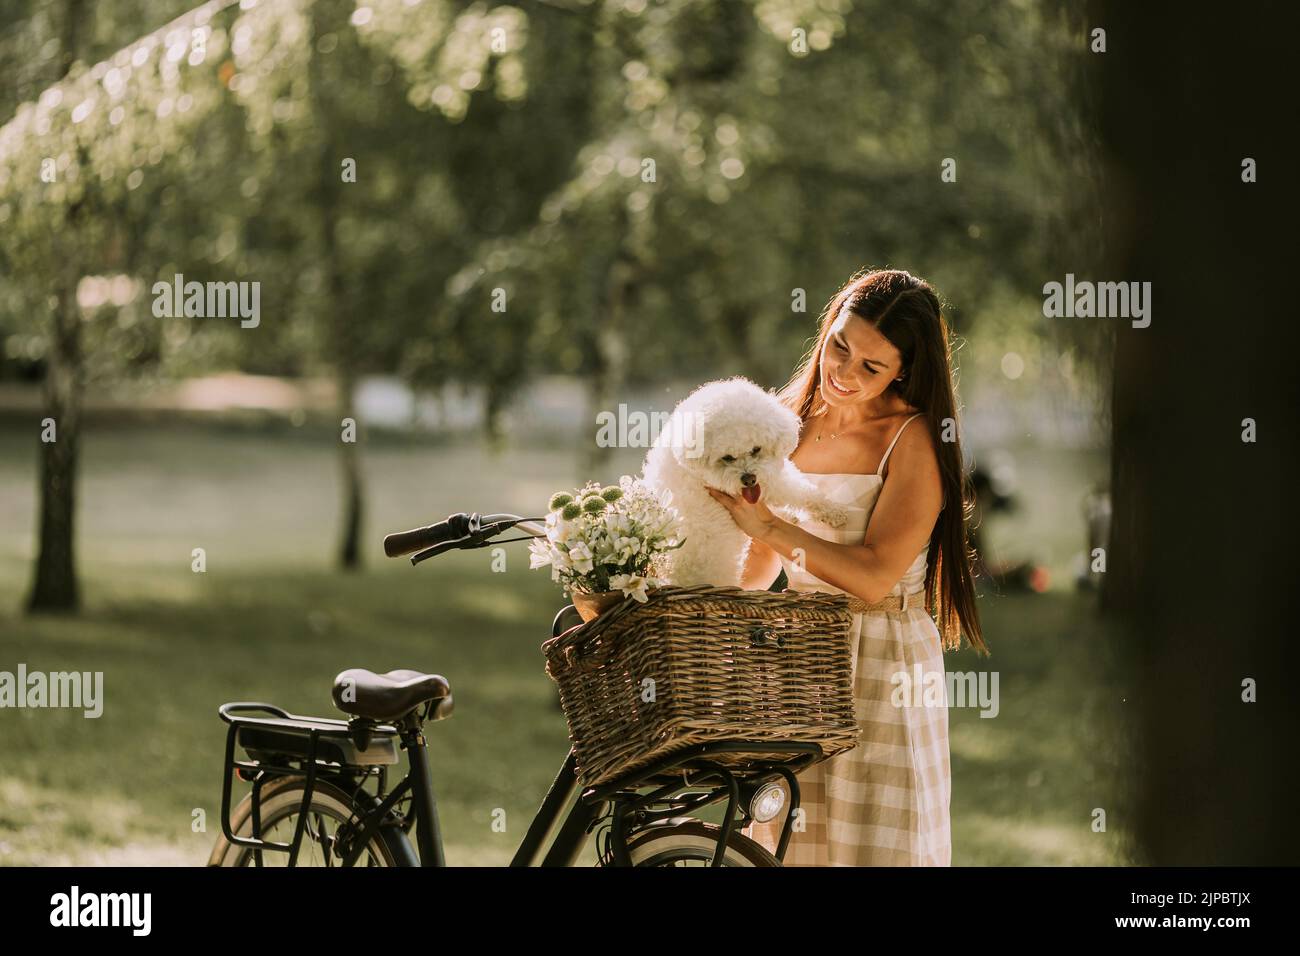 Una mujer joven con un perro blanco bichon en la cesta de la bicicleta eléctrica Foto de stock